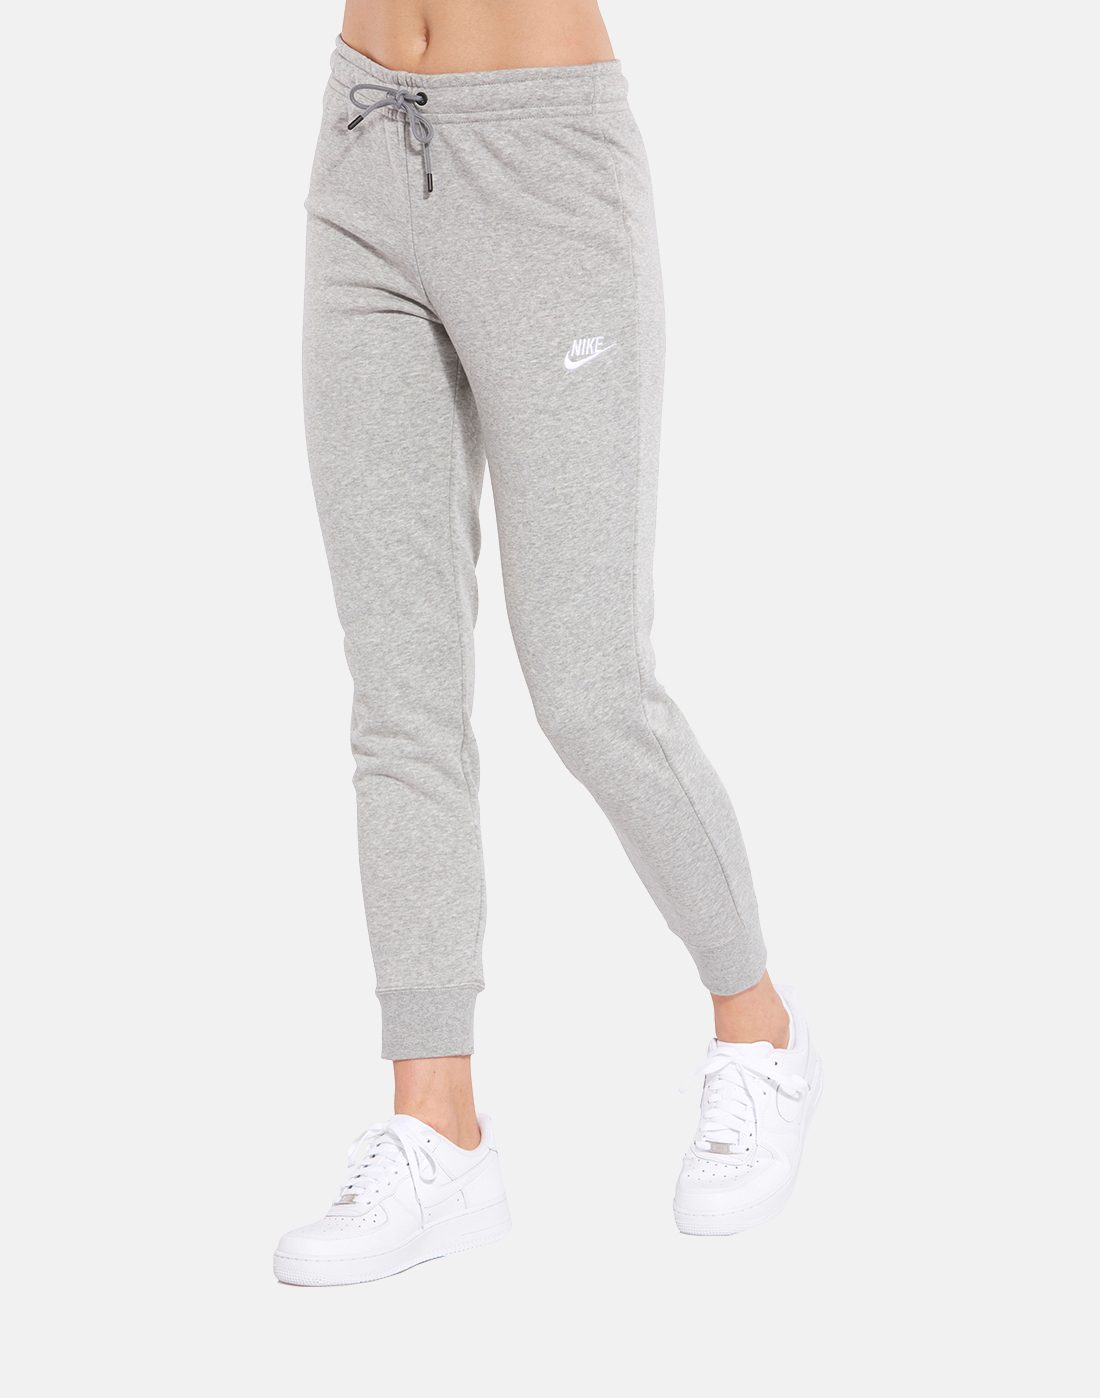 Women's Grey Nike Fleece Pants | Life Style Sports